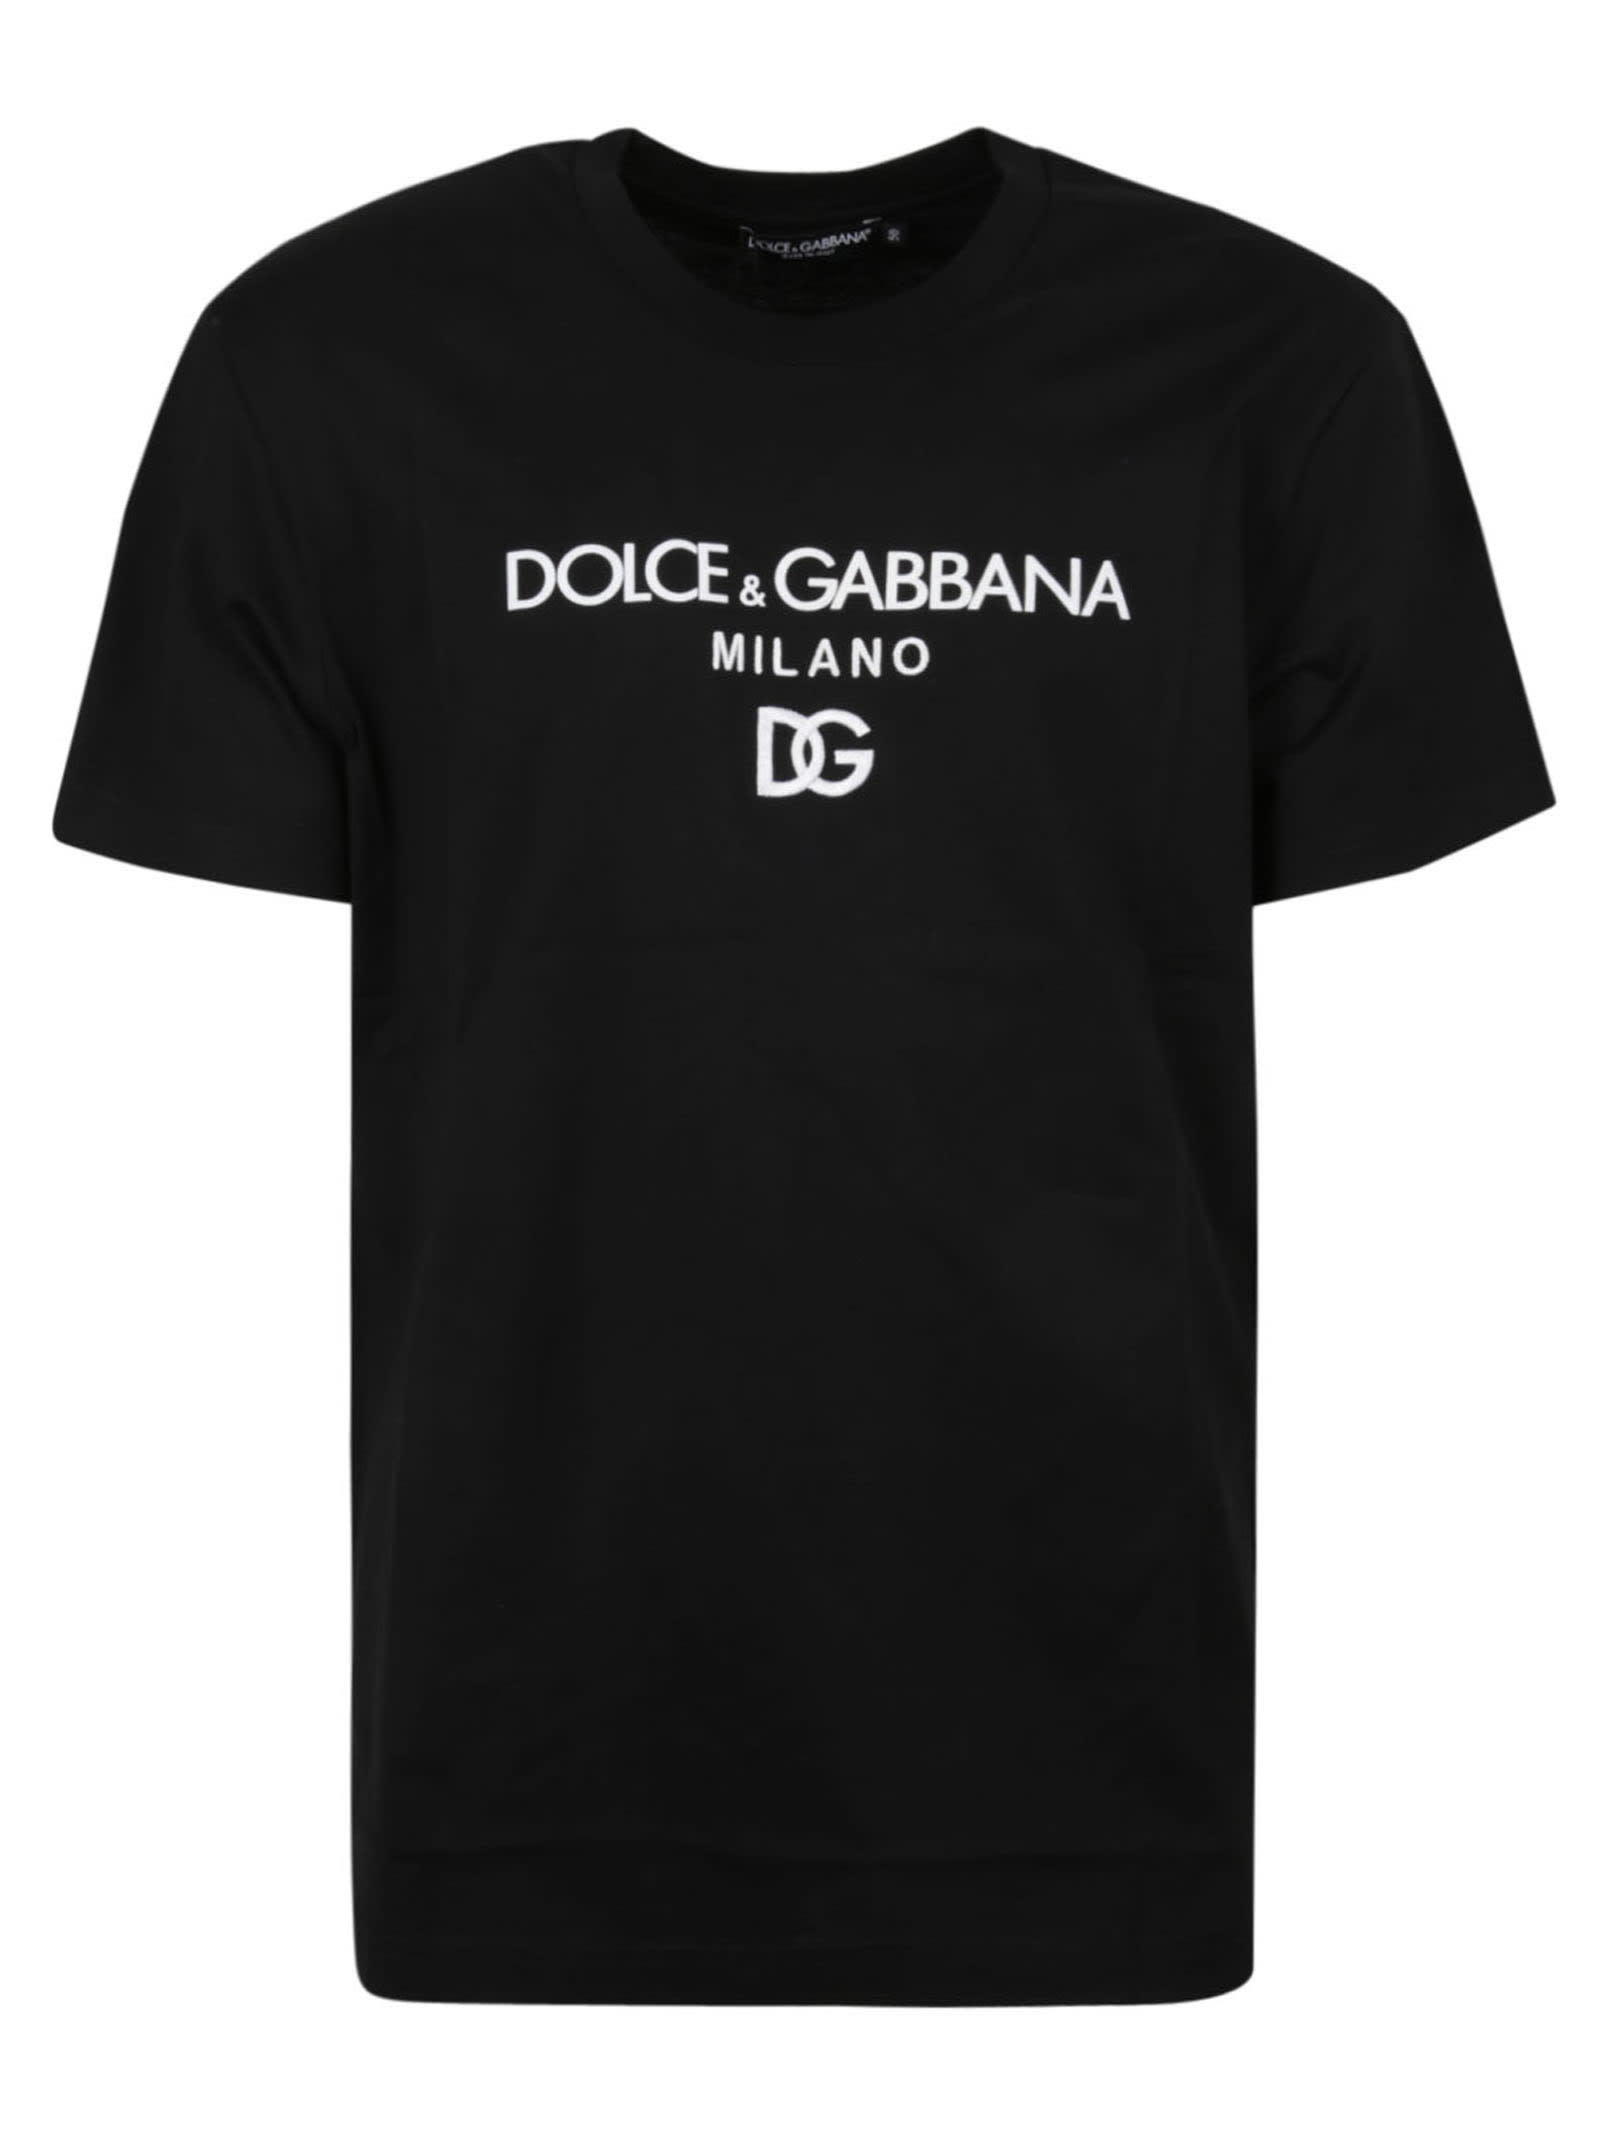 Dolce & Gabbana Milano T-shirt